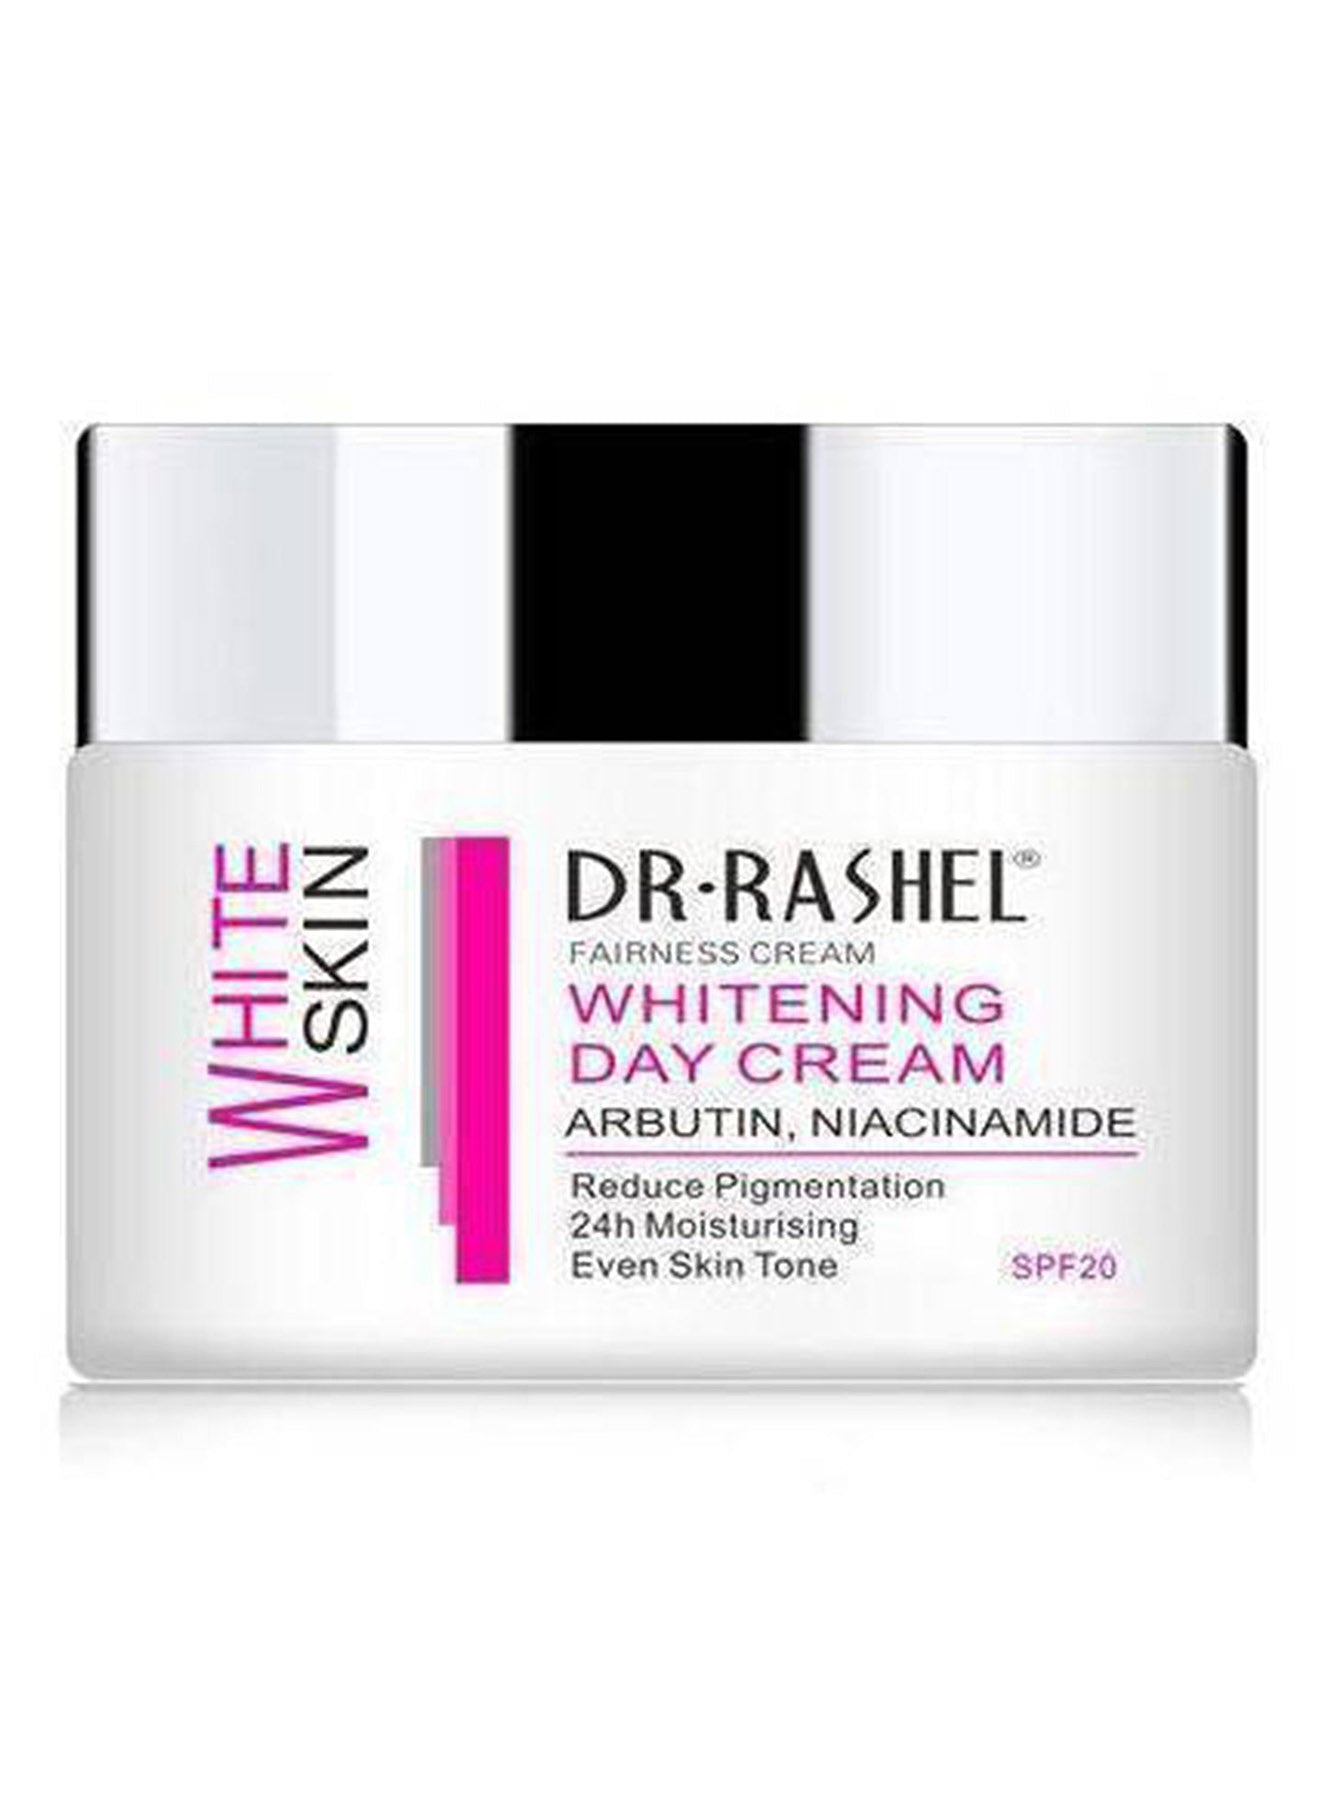 Dr Rashel Whitening Day Cream Spf 20 50g Value Pack of 2 